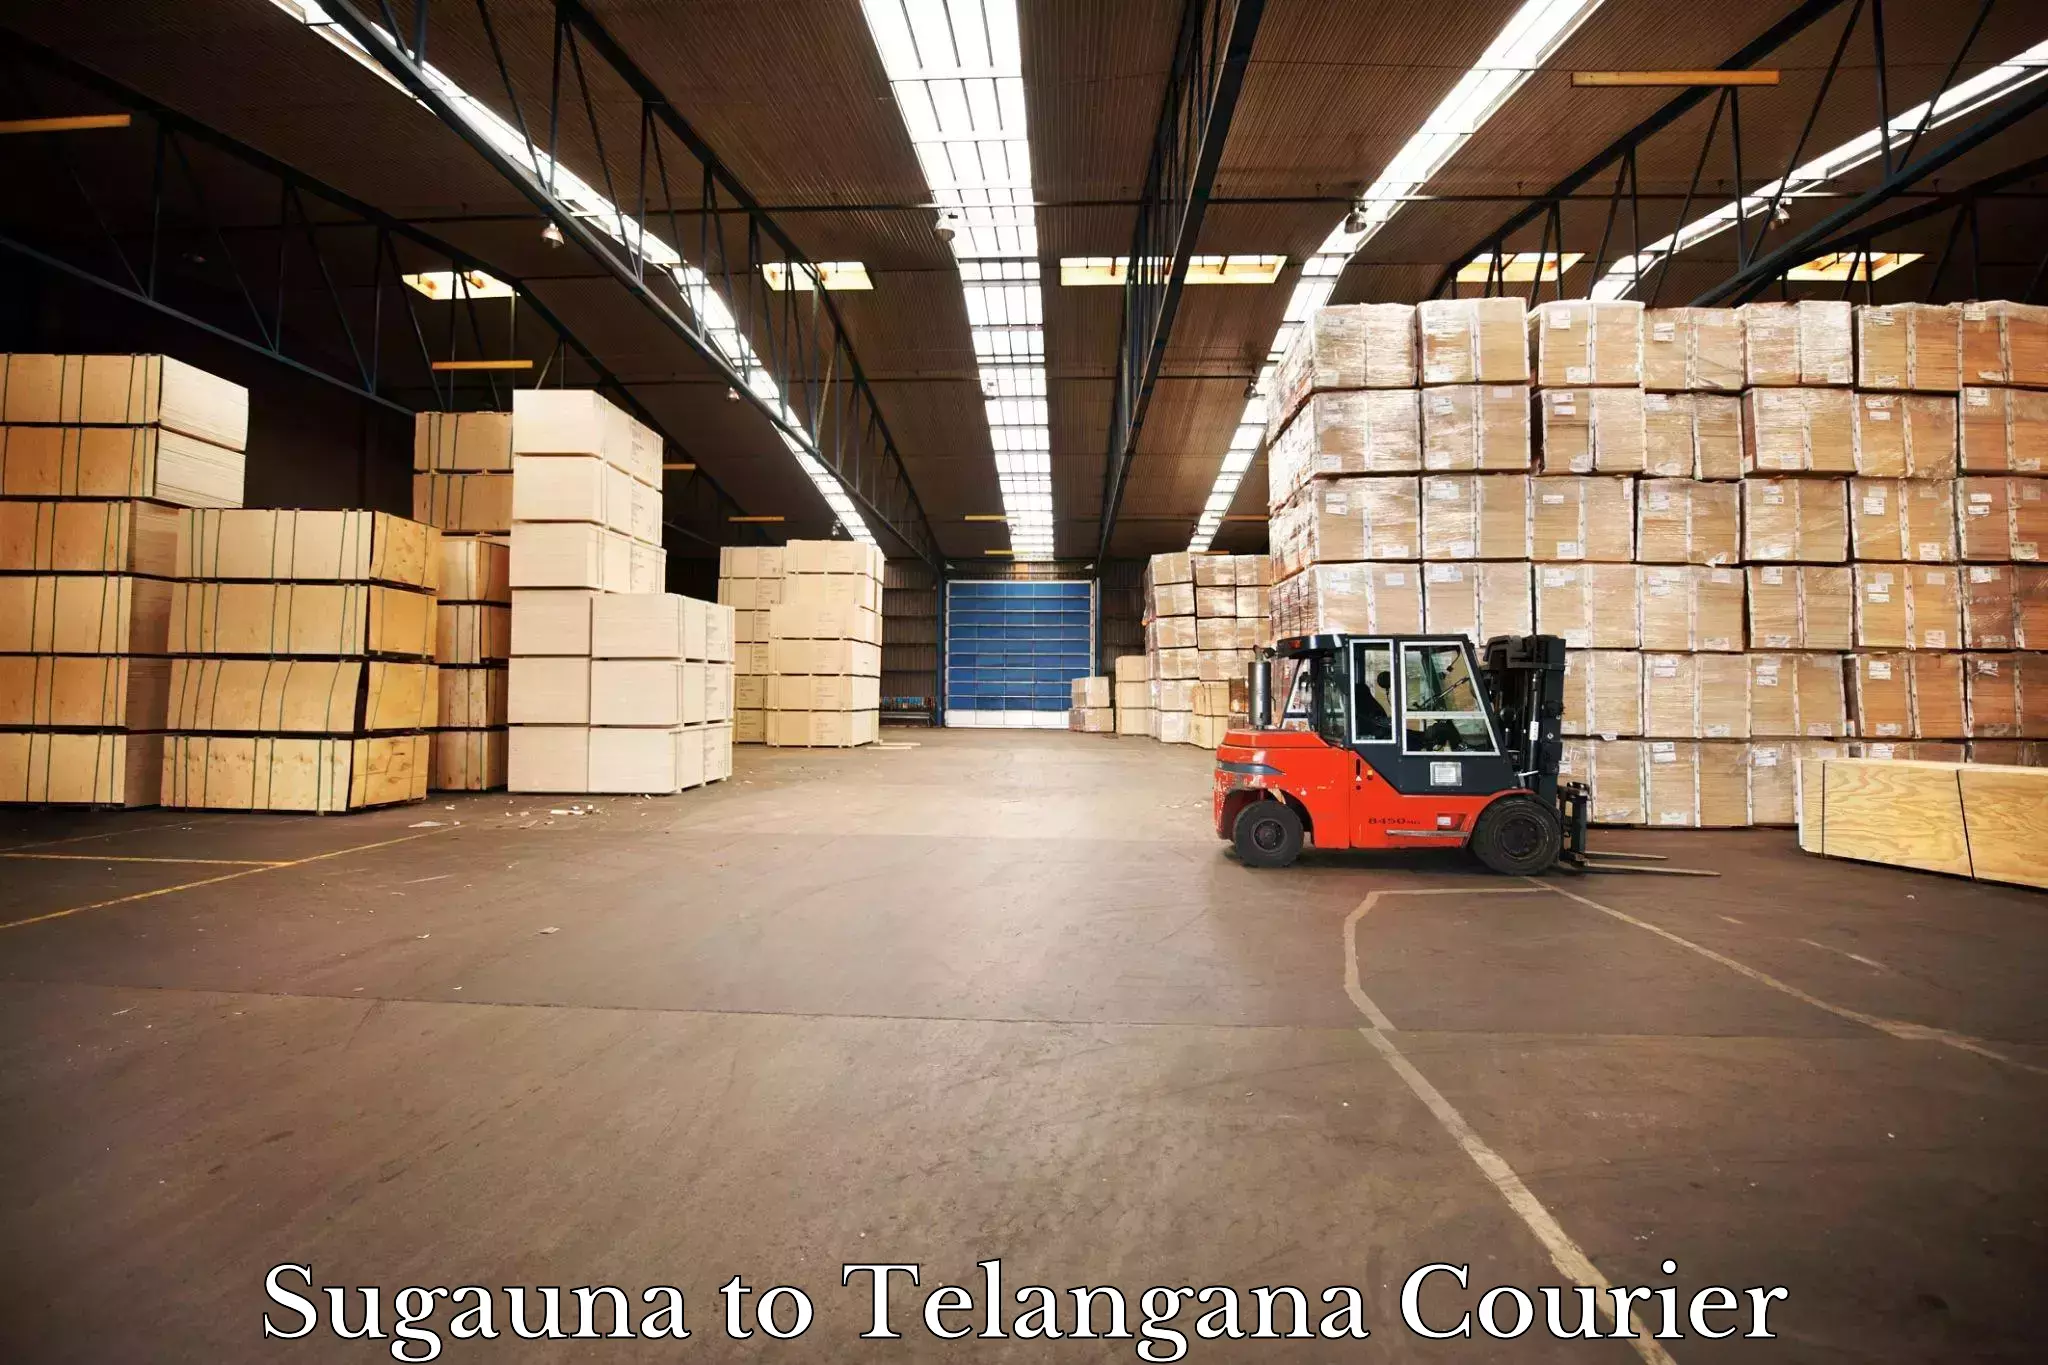 Door-to-door freight service Sugauna to Telangana